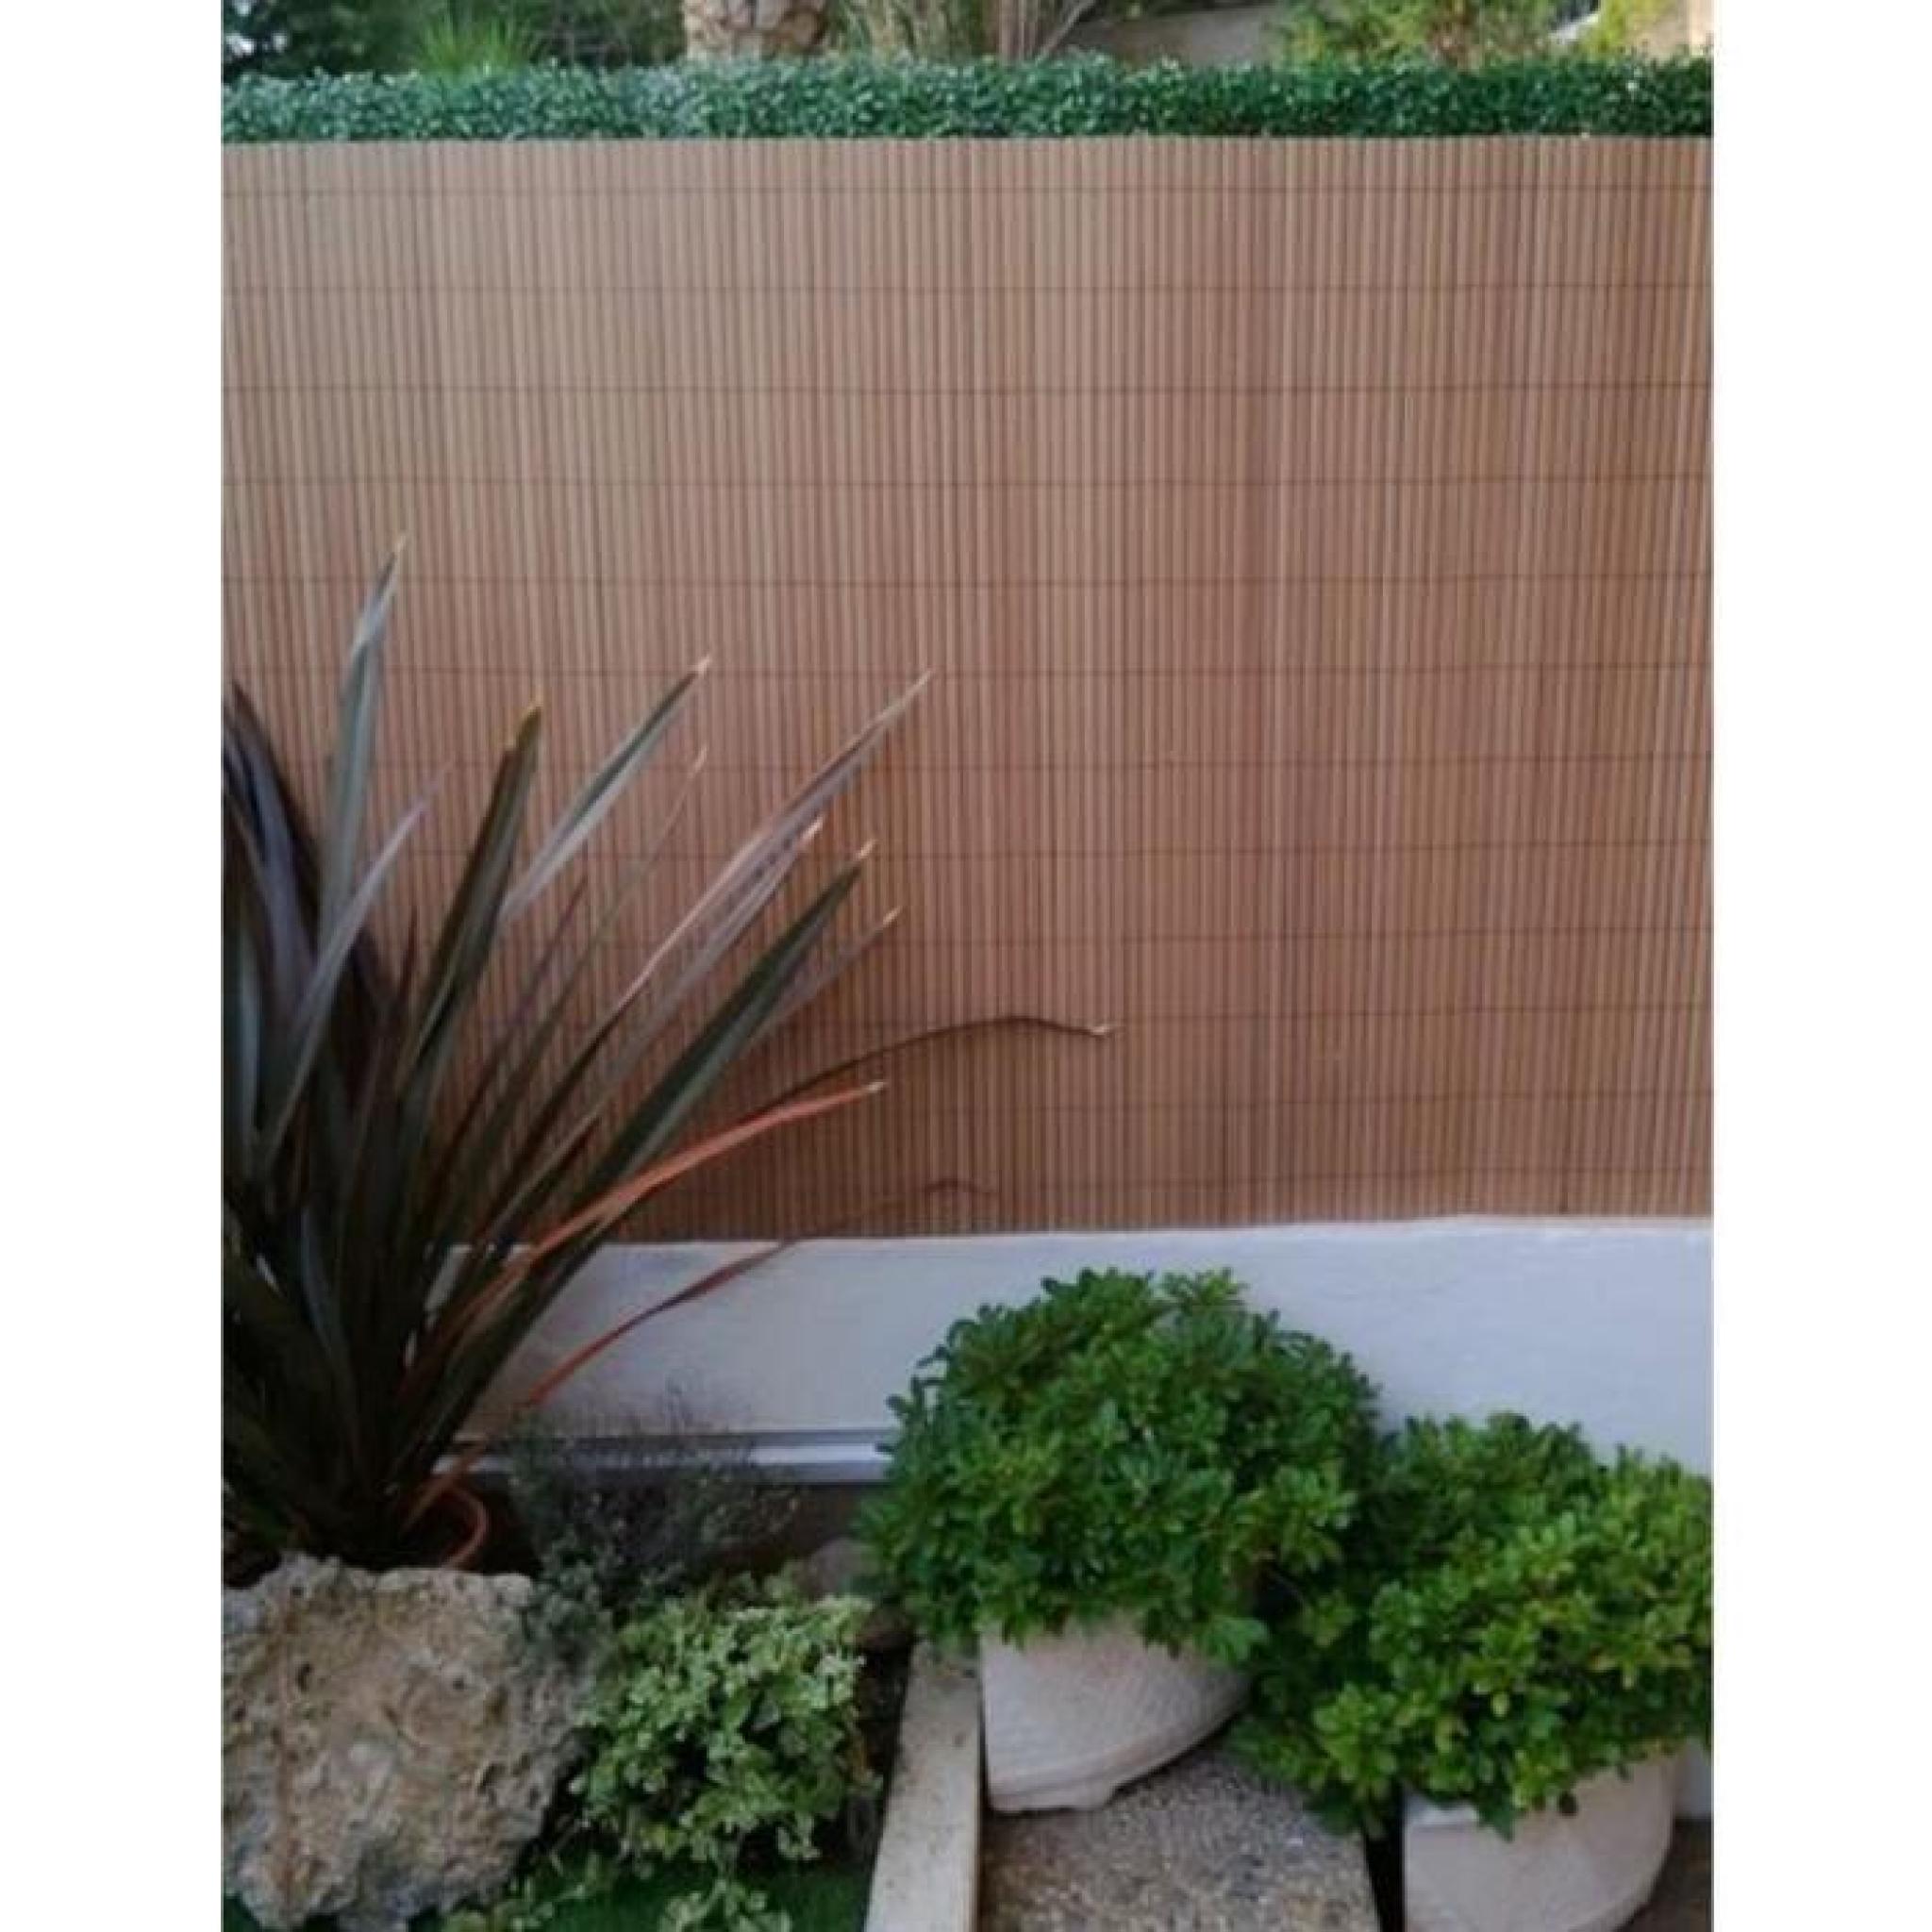 Canisse de jardin en Pvc double face coloris Teck en rouleau, 1,20m x 3m